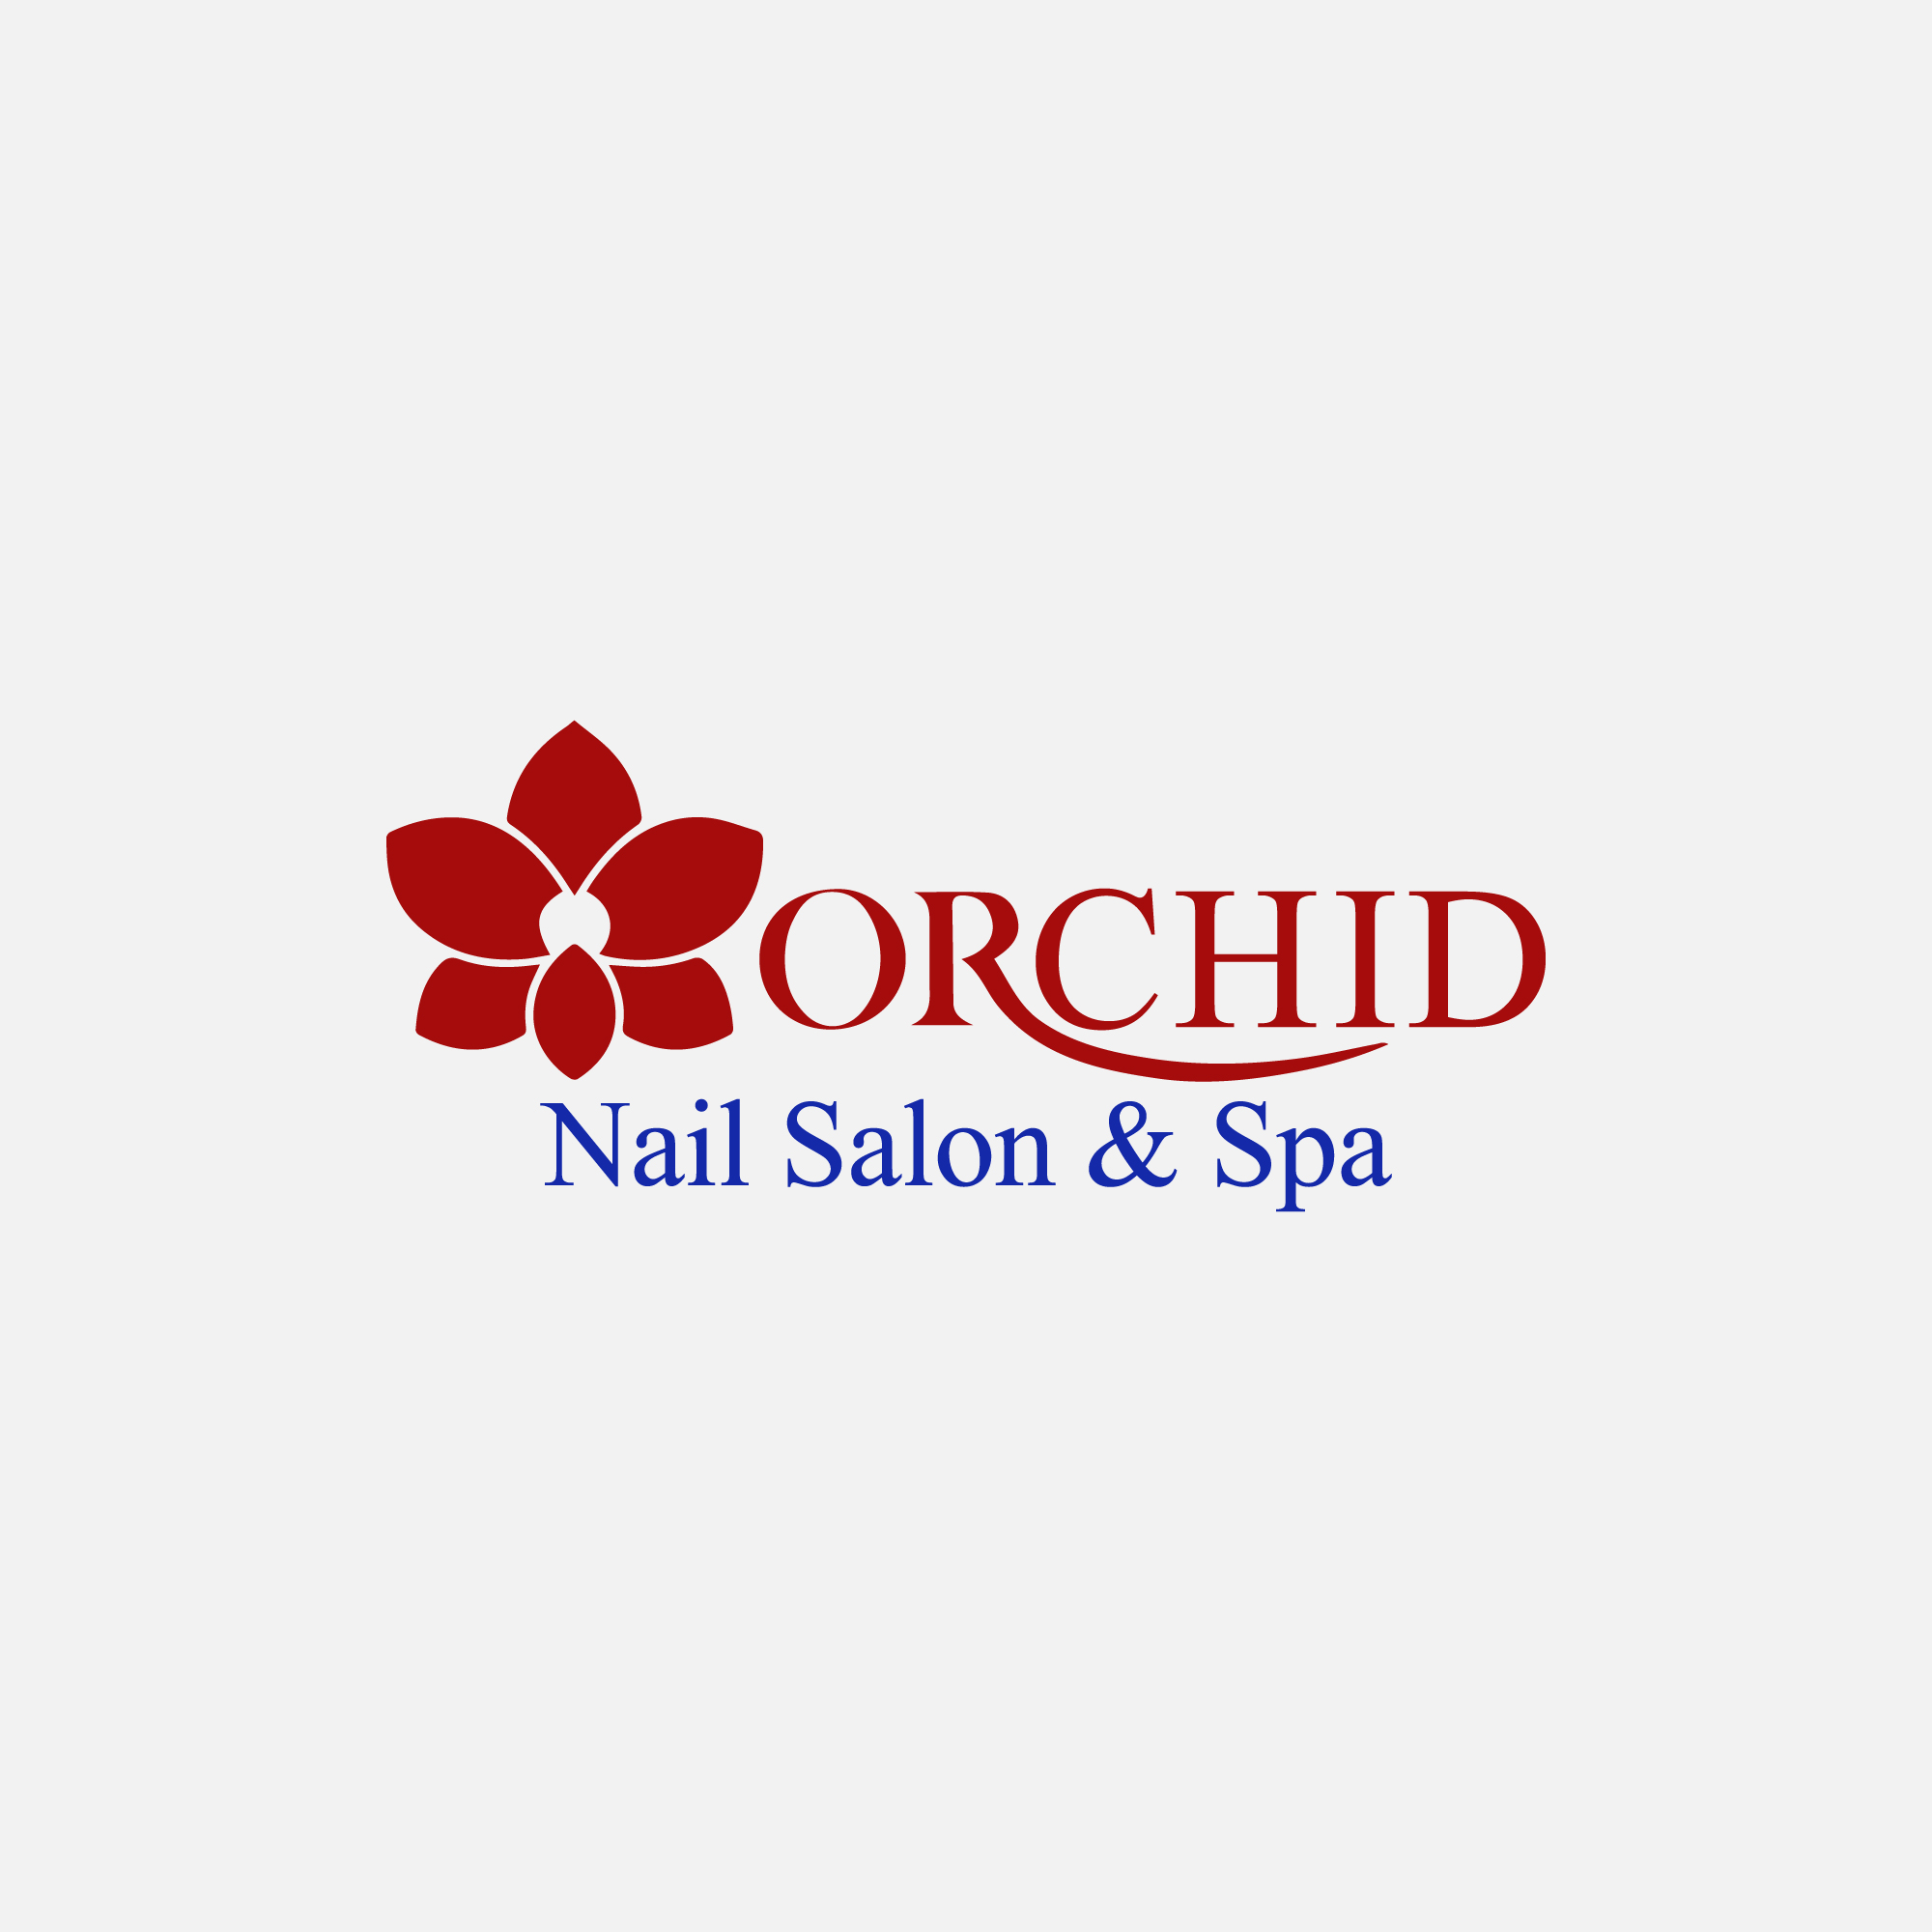 Orchid Nail Salon & Spa